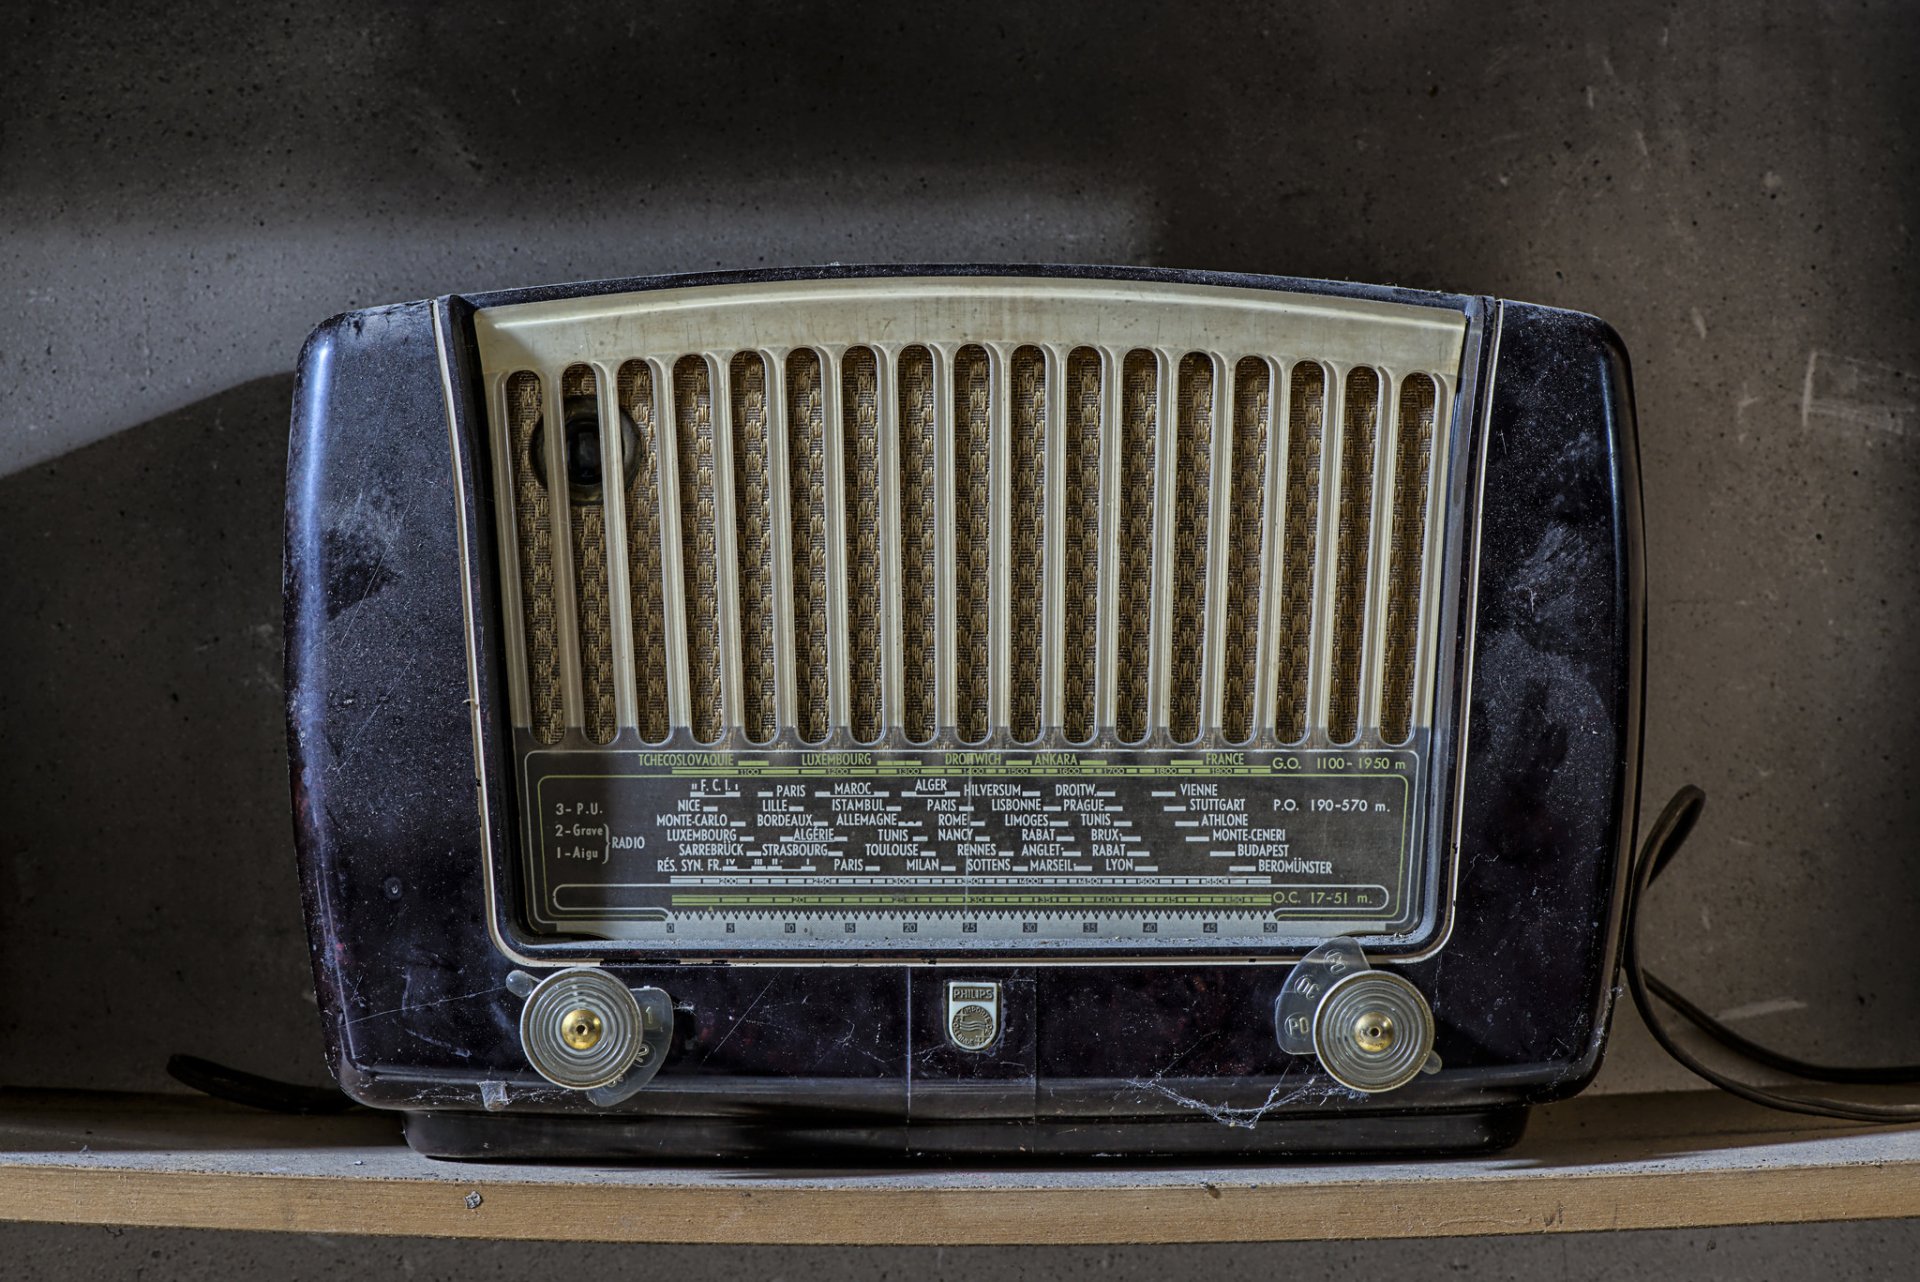 Сайт старое радио. Радио фон. Приемник с экраном. Старое радио. Радиоприемник дзинтарс.